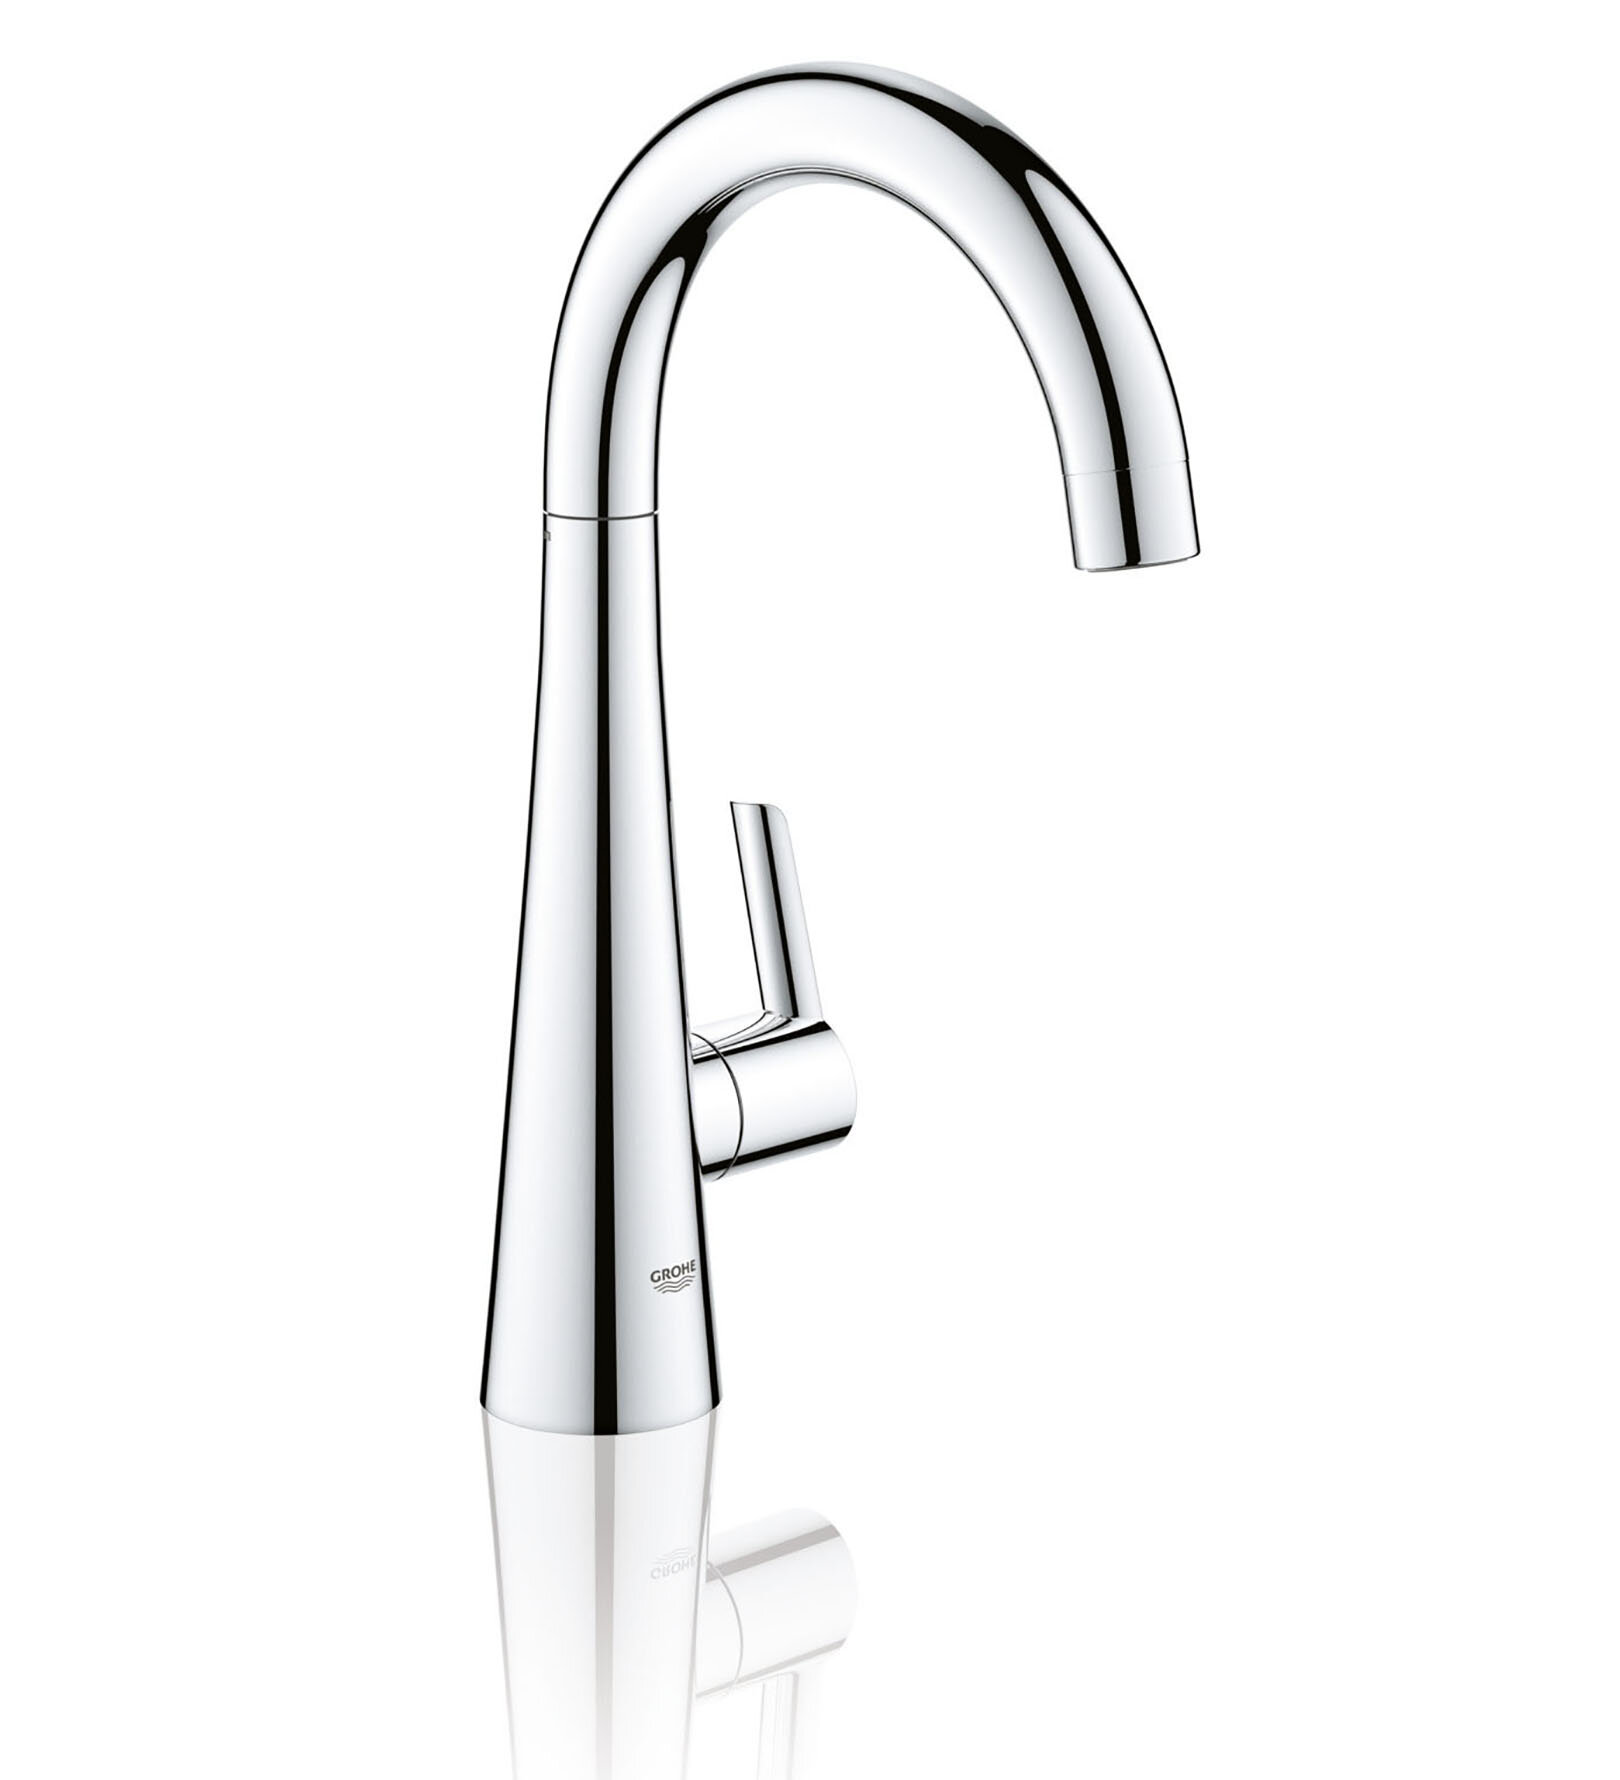 Grohe Ladylux L2 Pillar Tap Single Handle Kitchen Faucet Wayfair